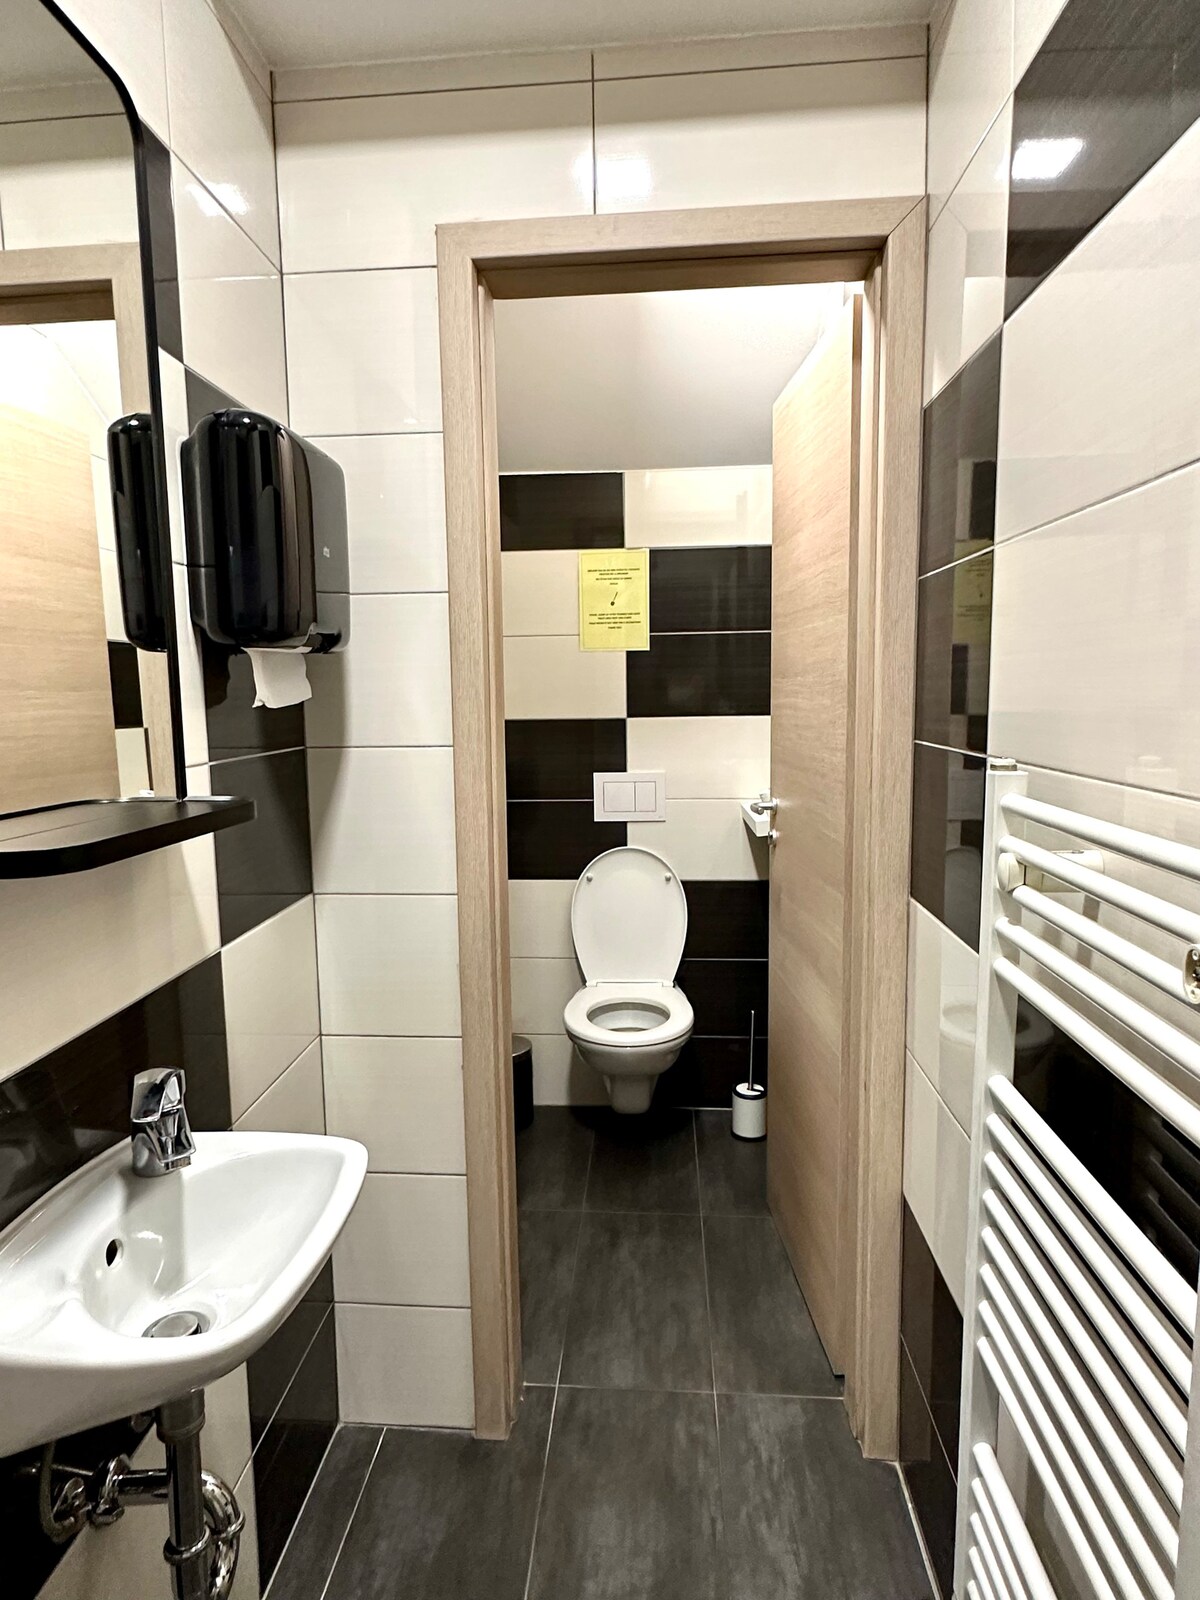 Kaptol Room - Shared Bathroom